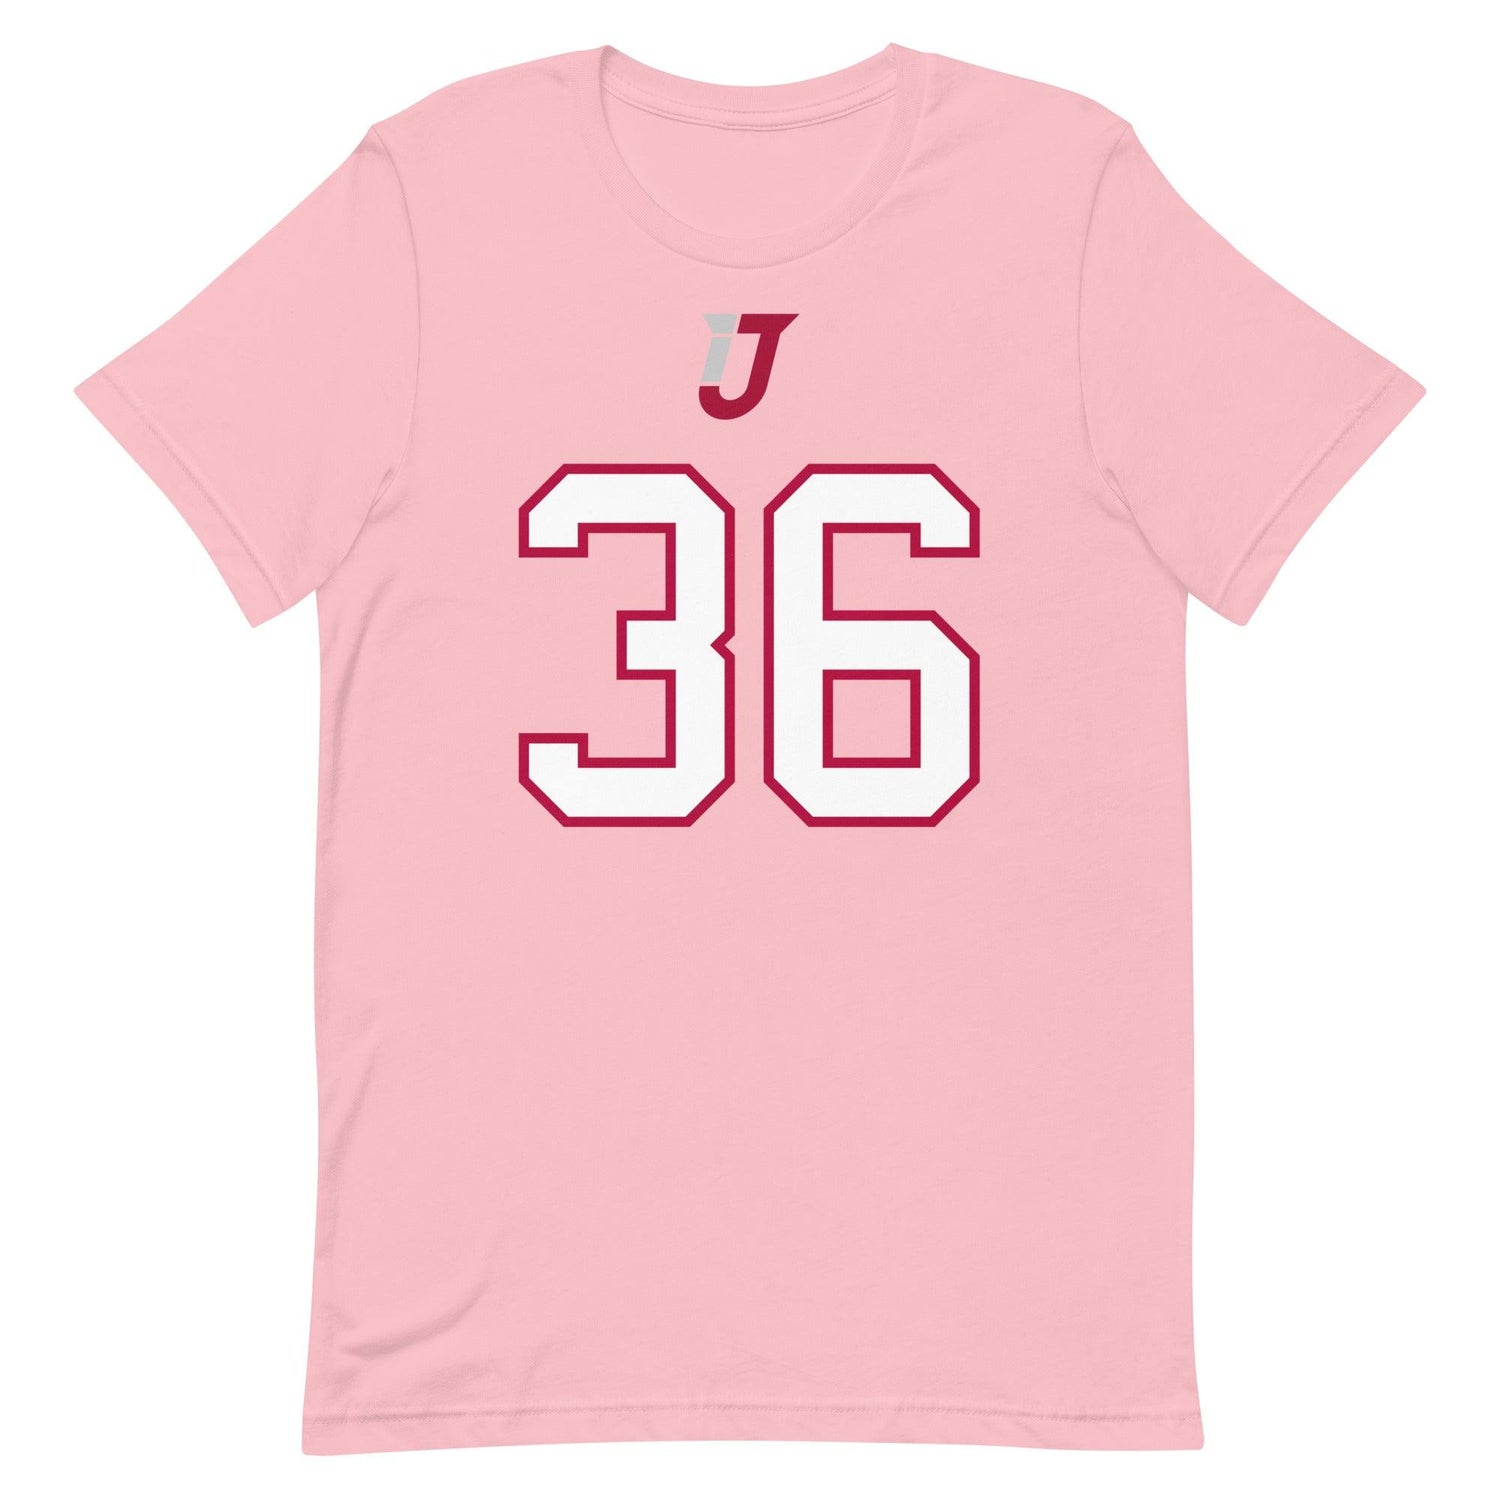 Ian Jackson "Jersey" t-shirt - Fan Arch